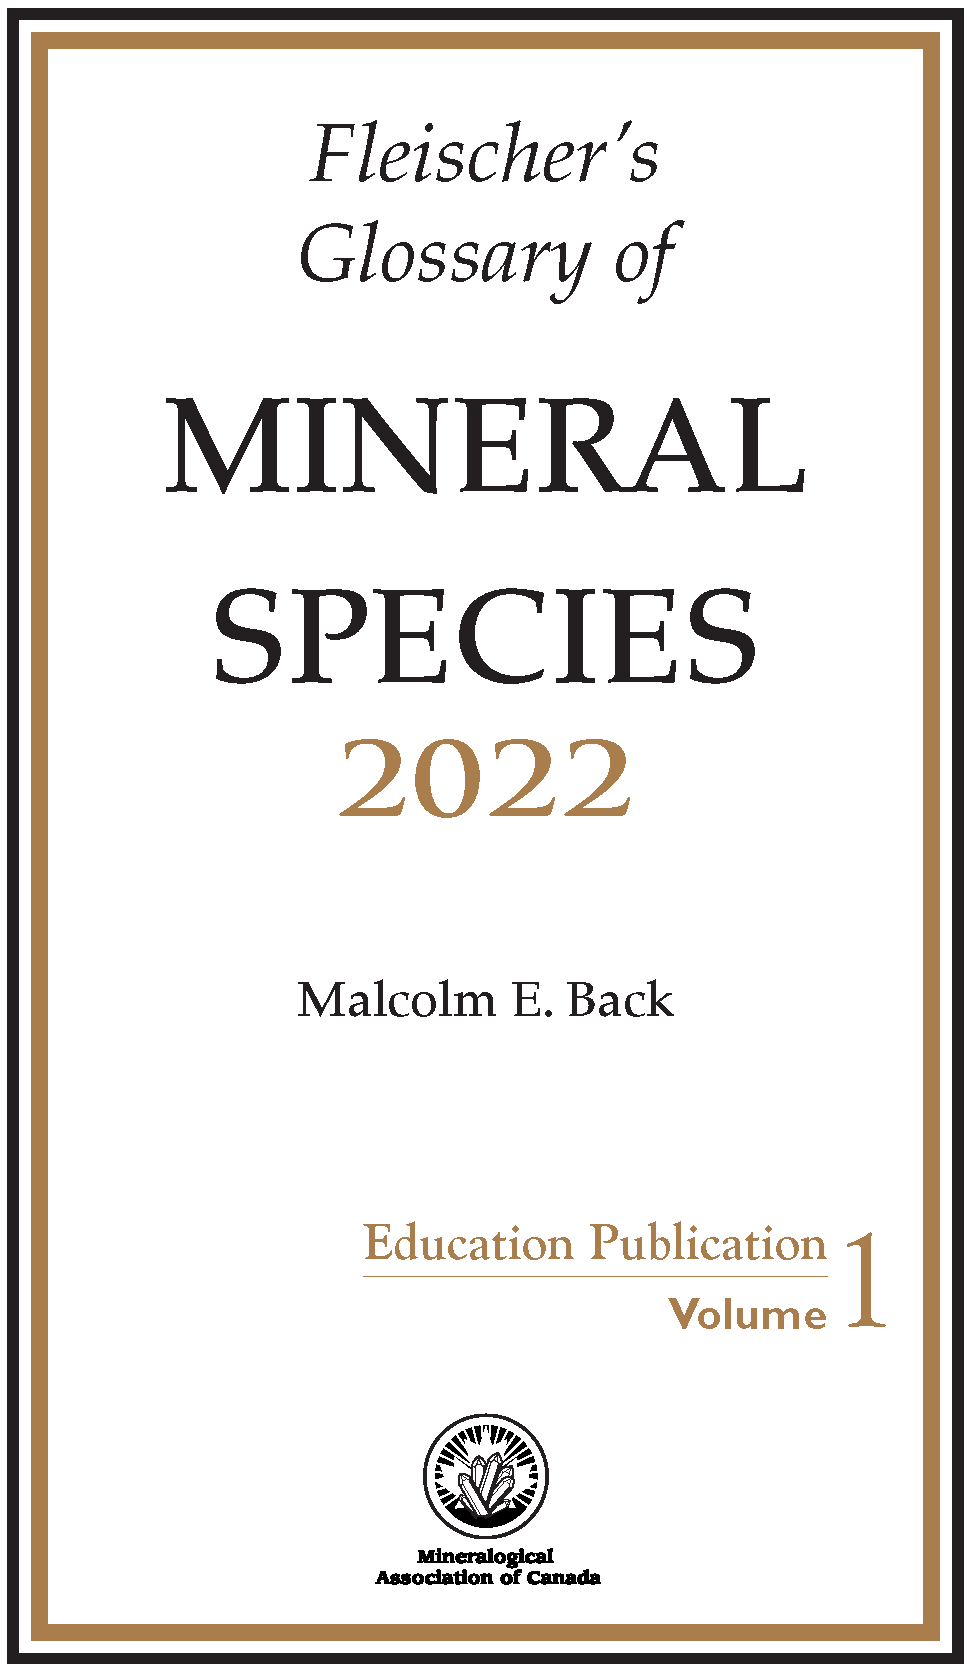 Fleischer’s Glossary of Mineral Species 2022